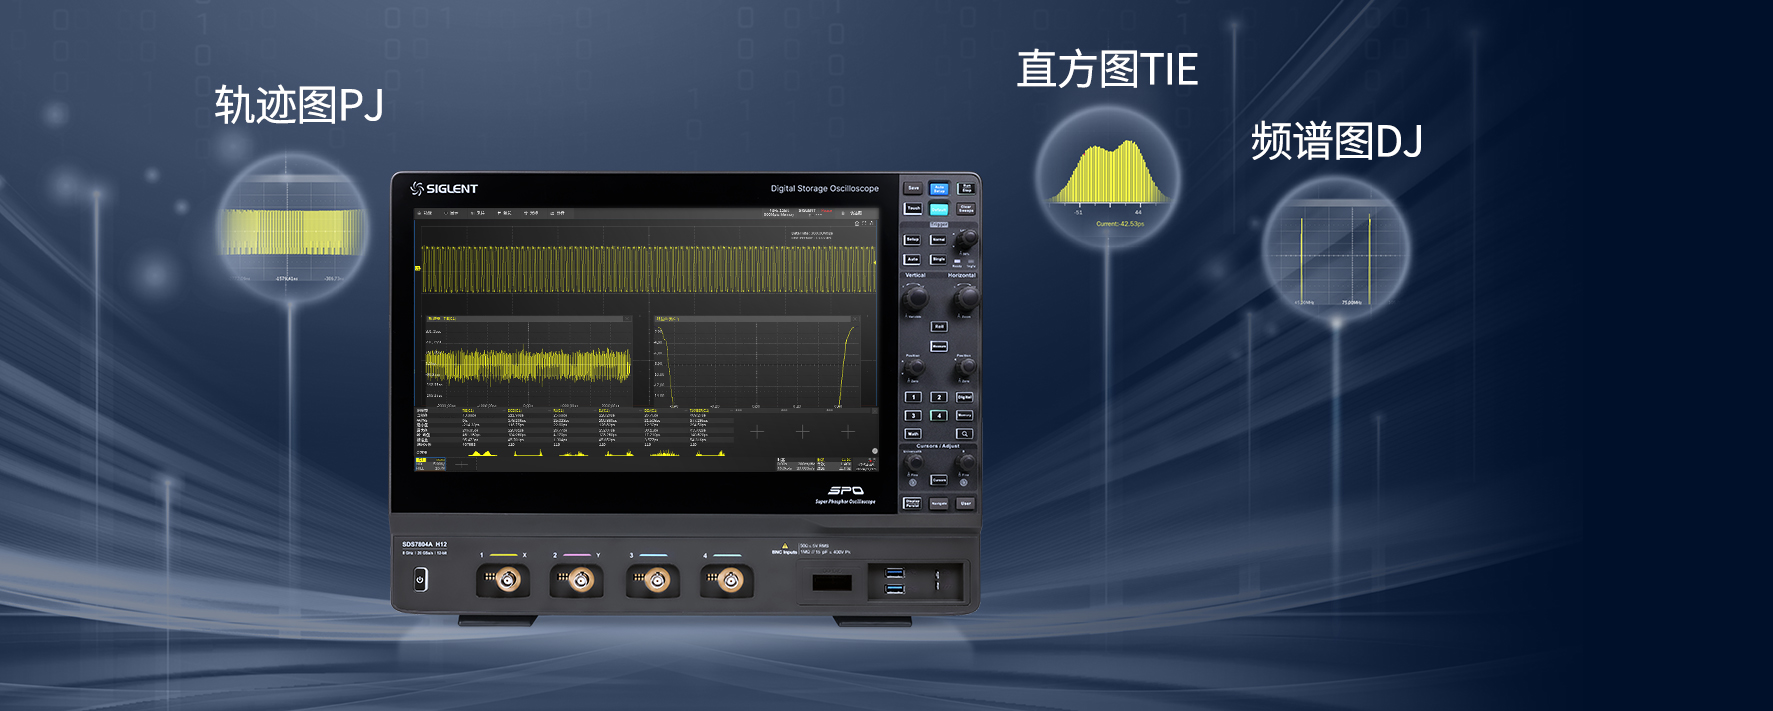 国产新标杆 | 鼎阳科技发布8GHz带宽 12bit高分辨率示波器